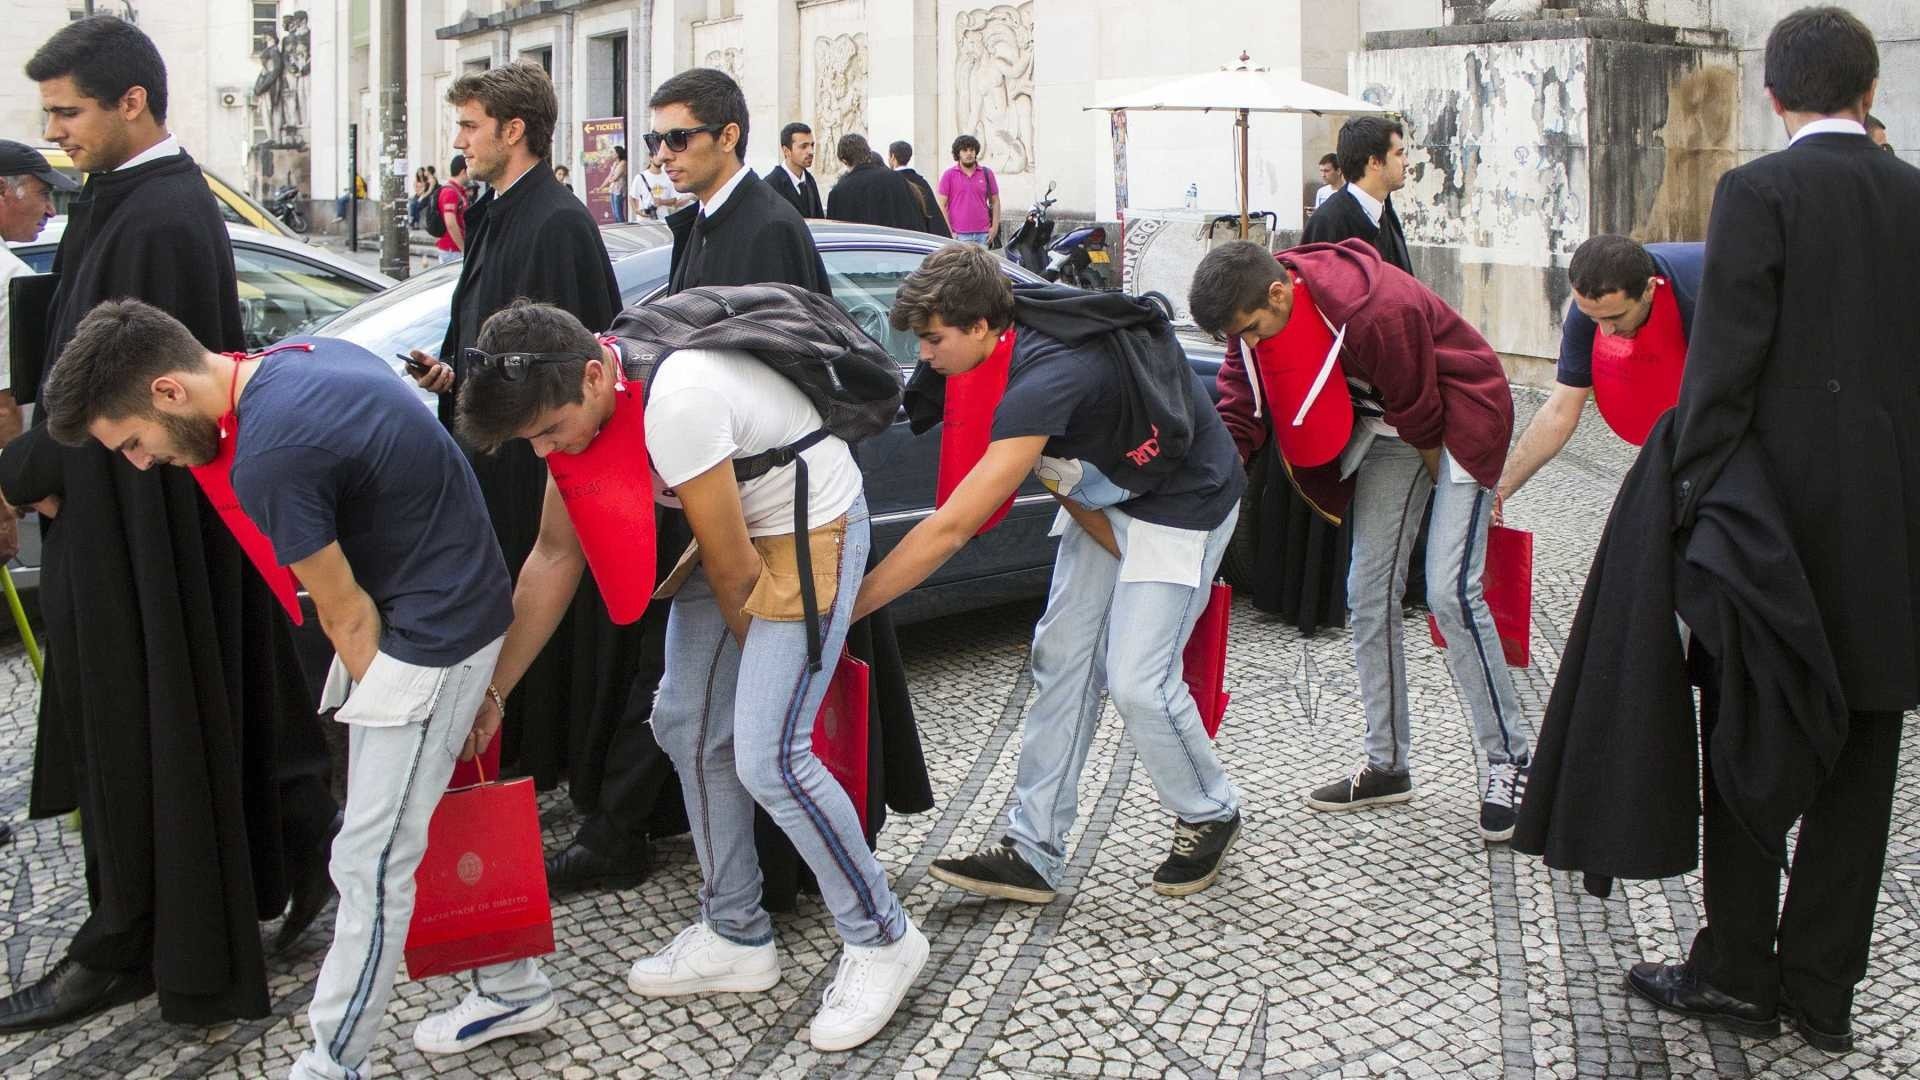 Reitor da Universidade do Porto reitera proibição de praxes abusivas